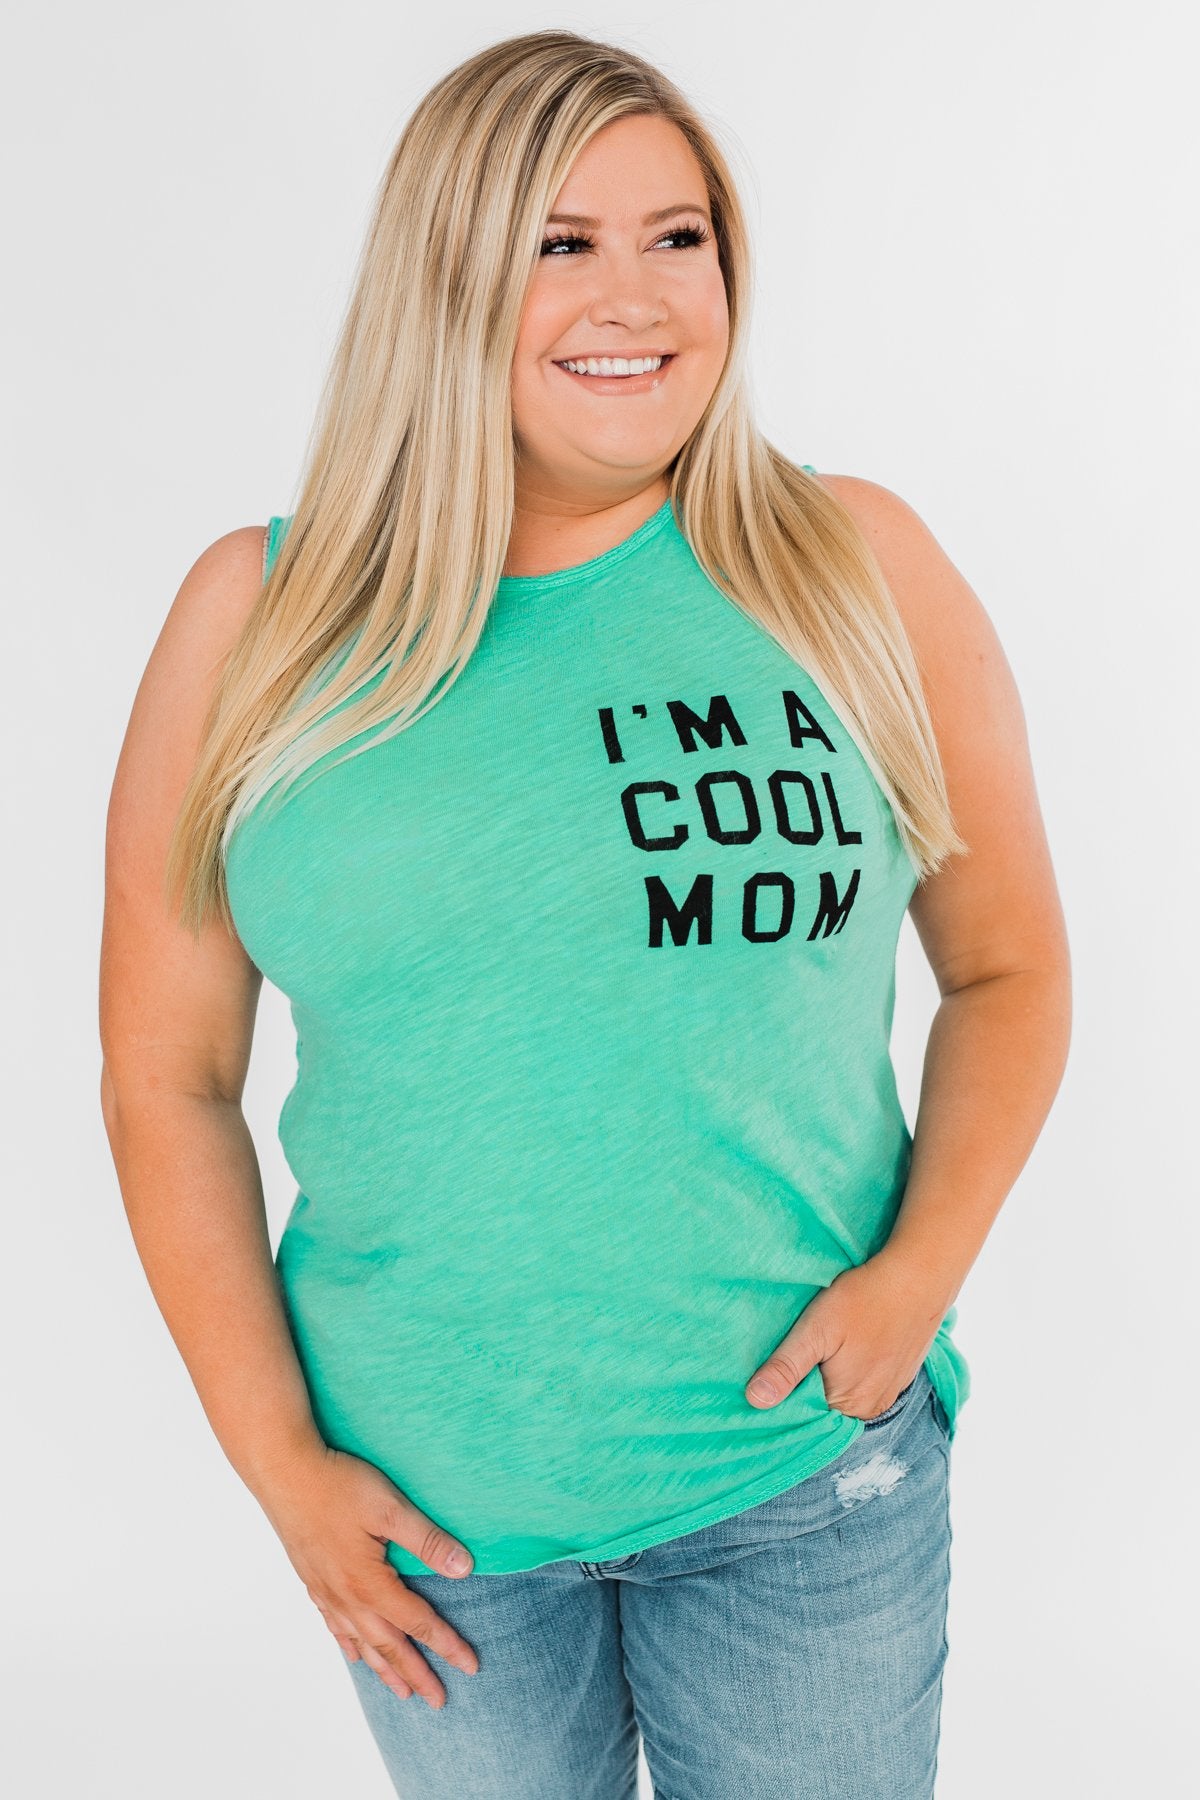 "I'm a Cool Mom" Tank Top- Bright Mint